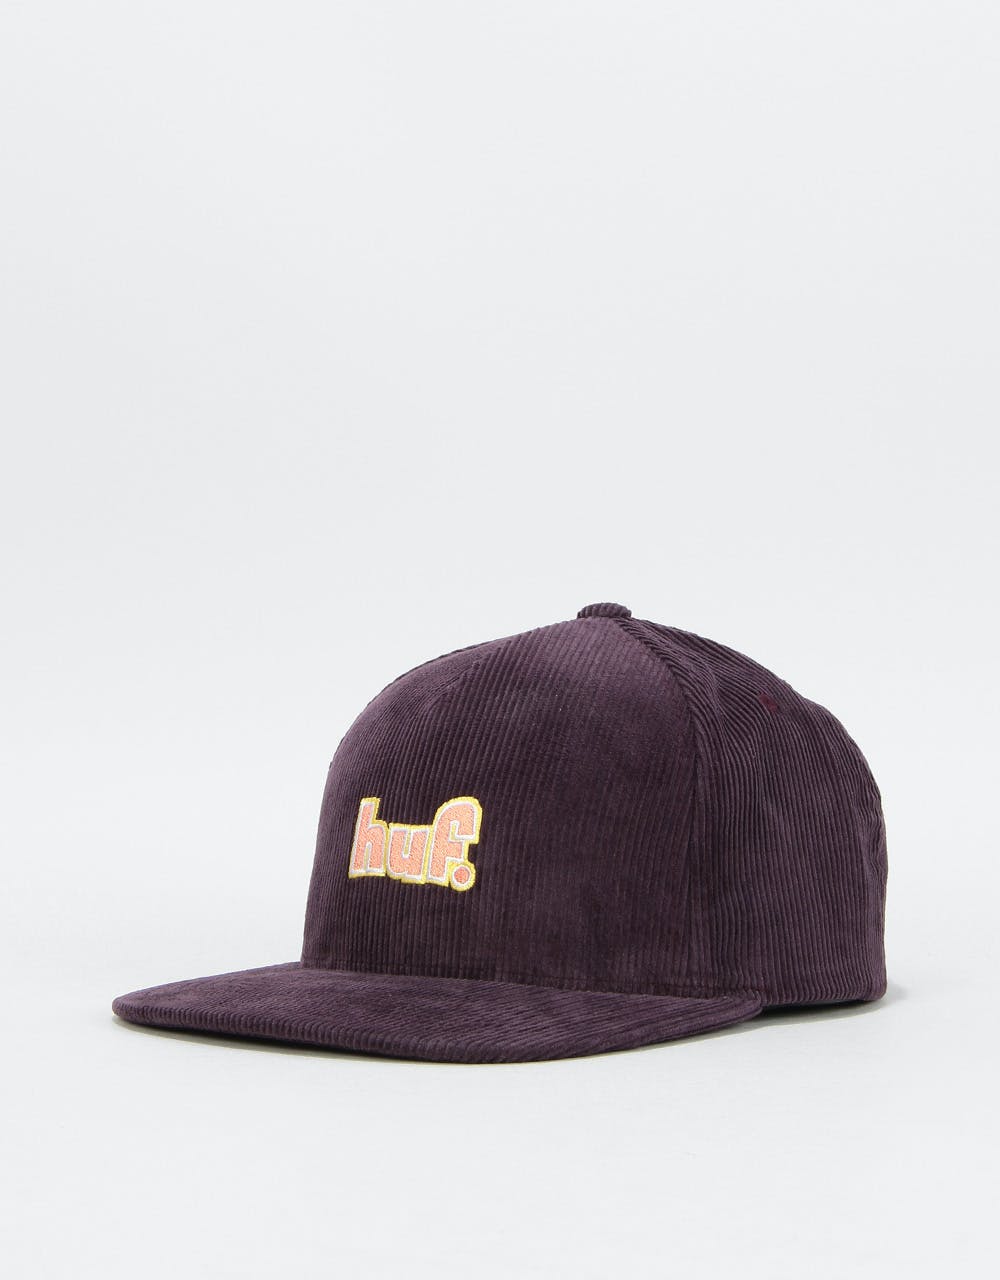 HUF 1993 Logo Snapback Cap - Purple Velvet